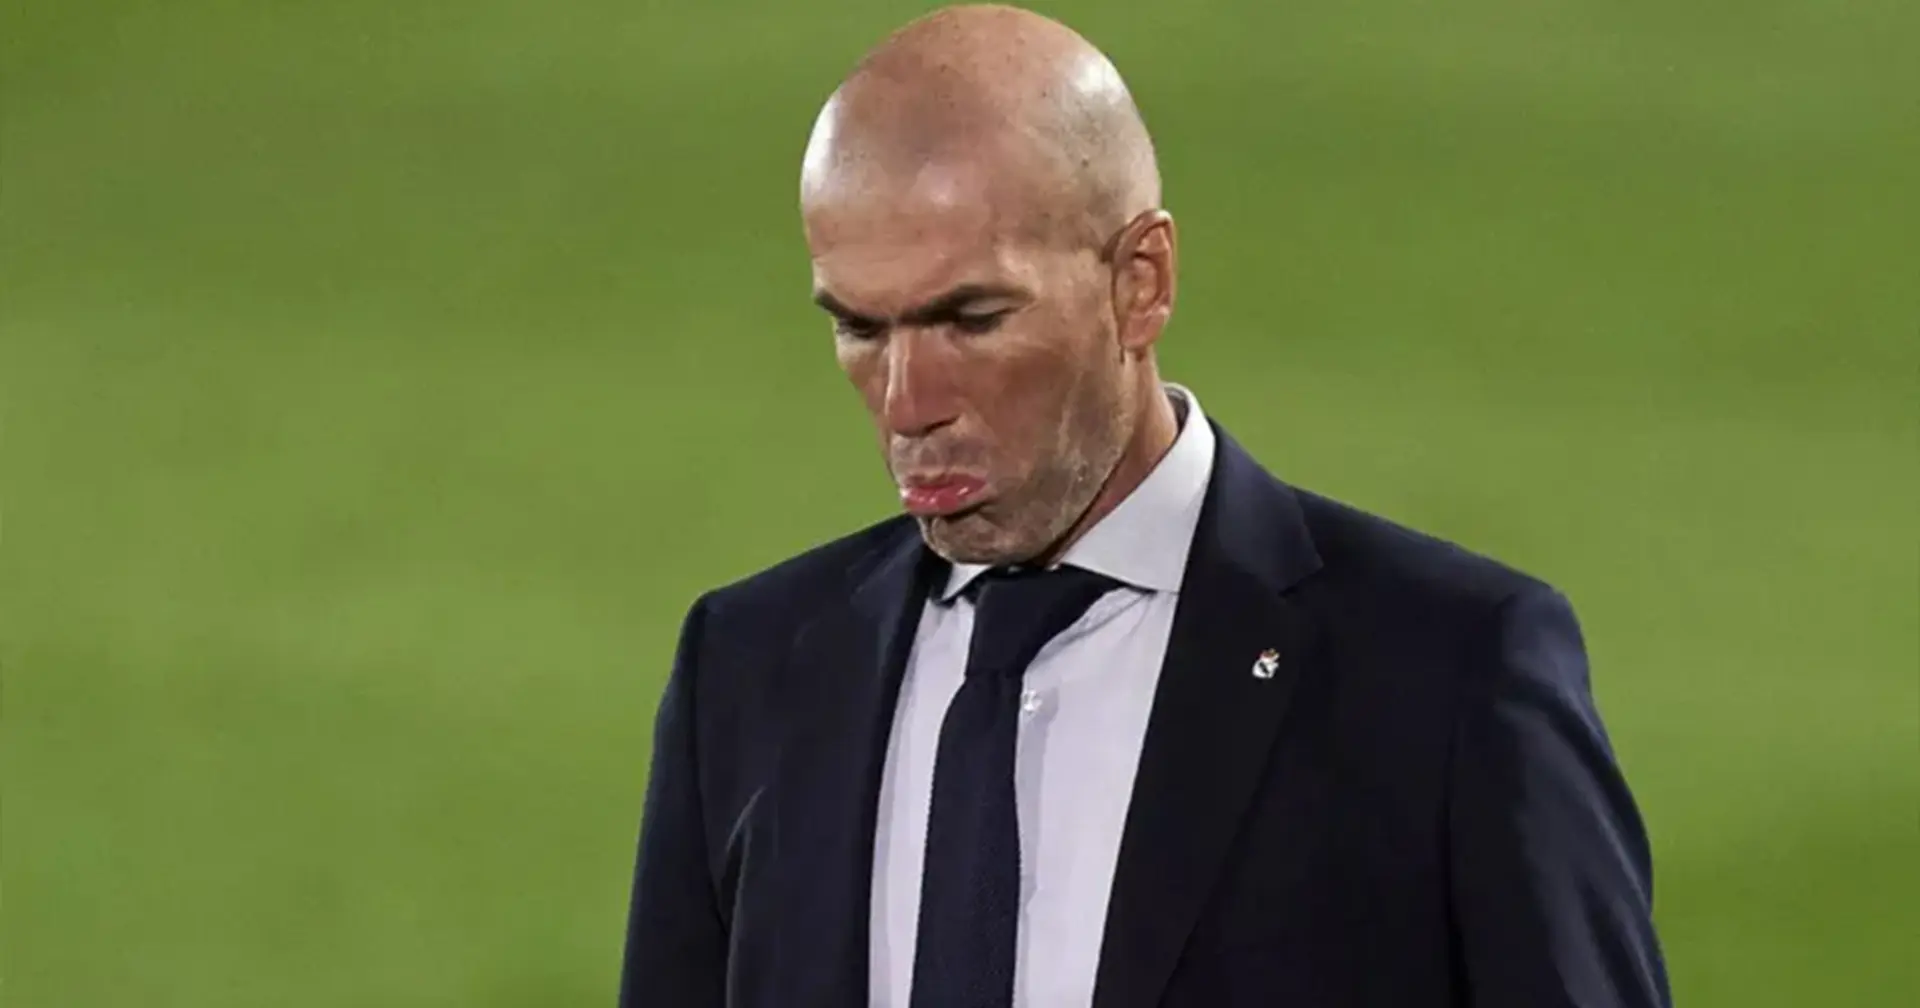 ¿Por qué la Copa del Rey sigue siendo una Kryptonita para Zidane? Explicado en 5 puntos